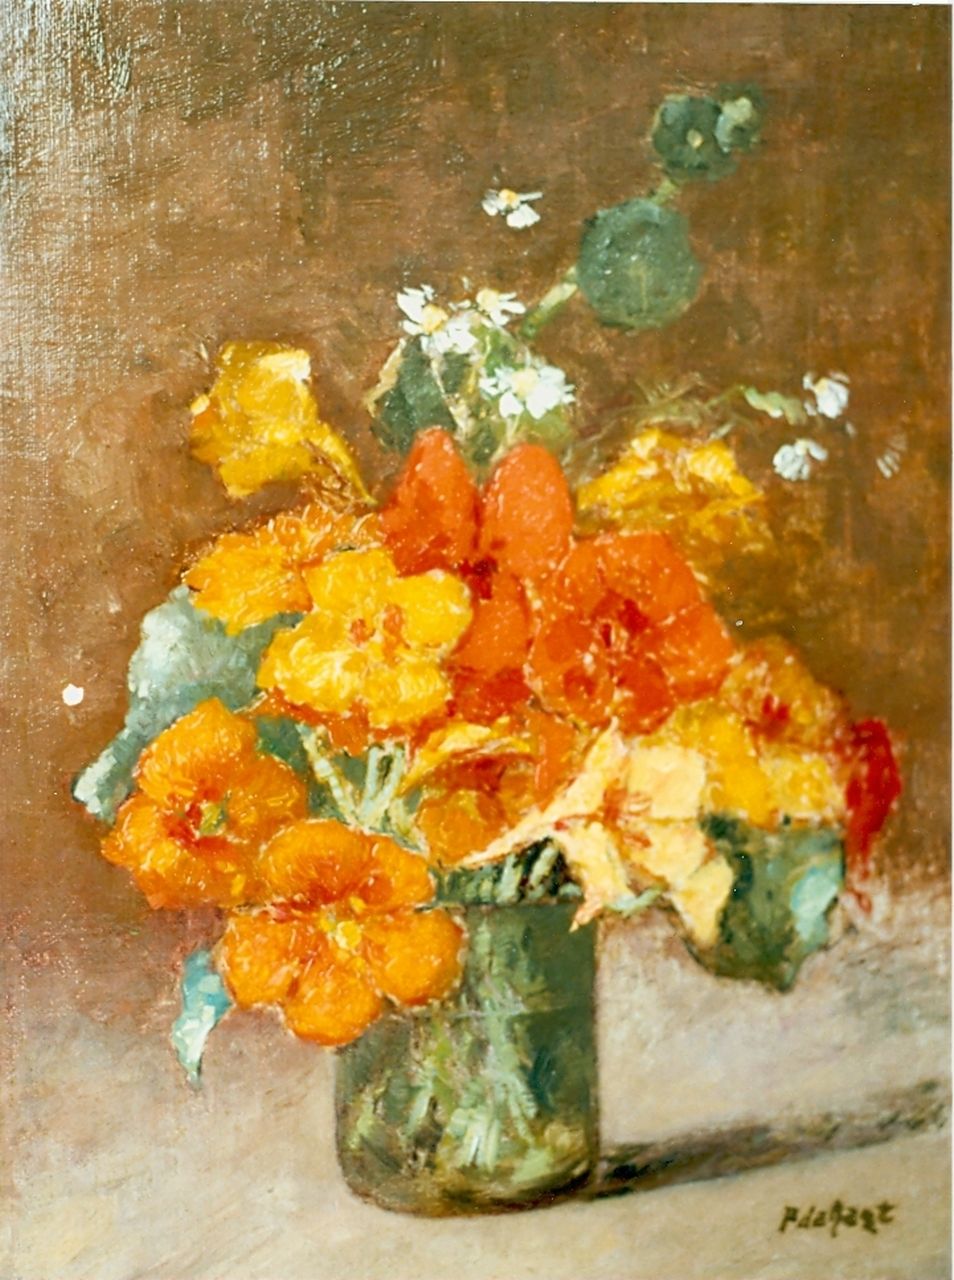 Regt P. de | Pieter 'Piet' de Regt, Flower still life, oil on canvas laid down on panel 35.5 x 26.5 cm, signed l.r.